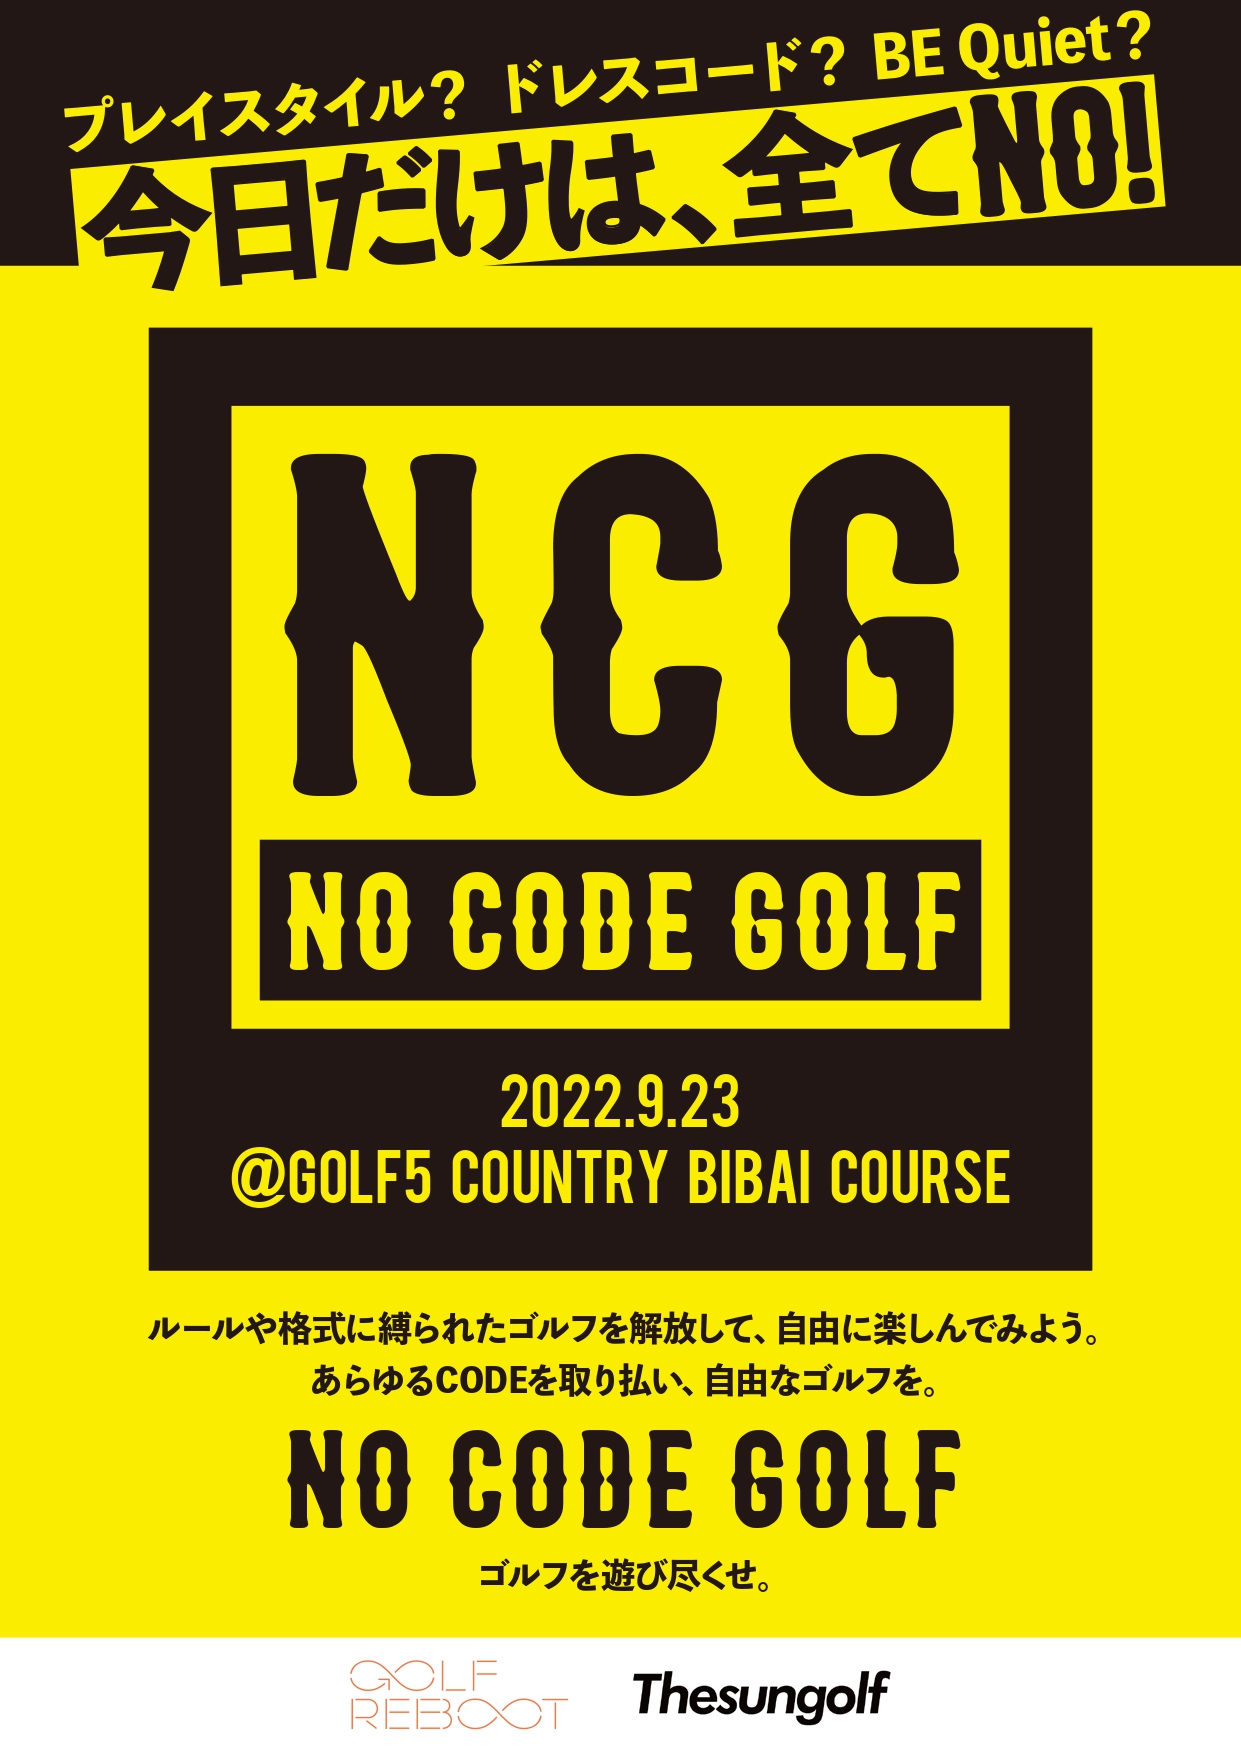 【NO CODE GOLF】誰も体験したことがないゲームクリア 型ゴルフイベント!